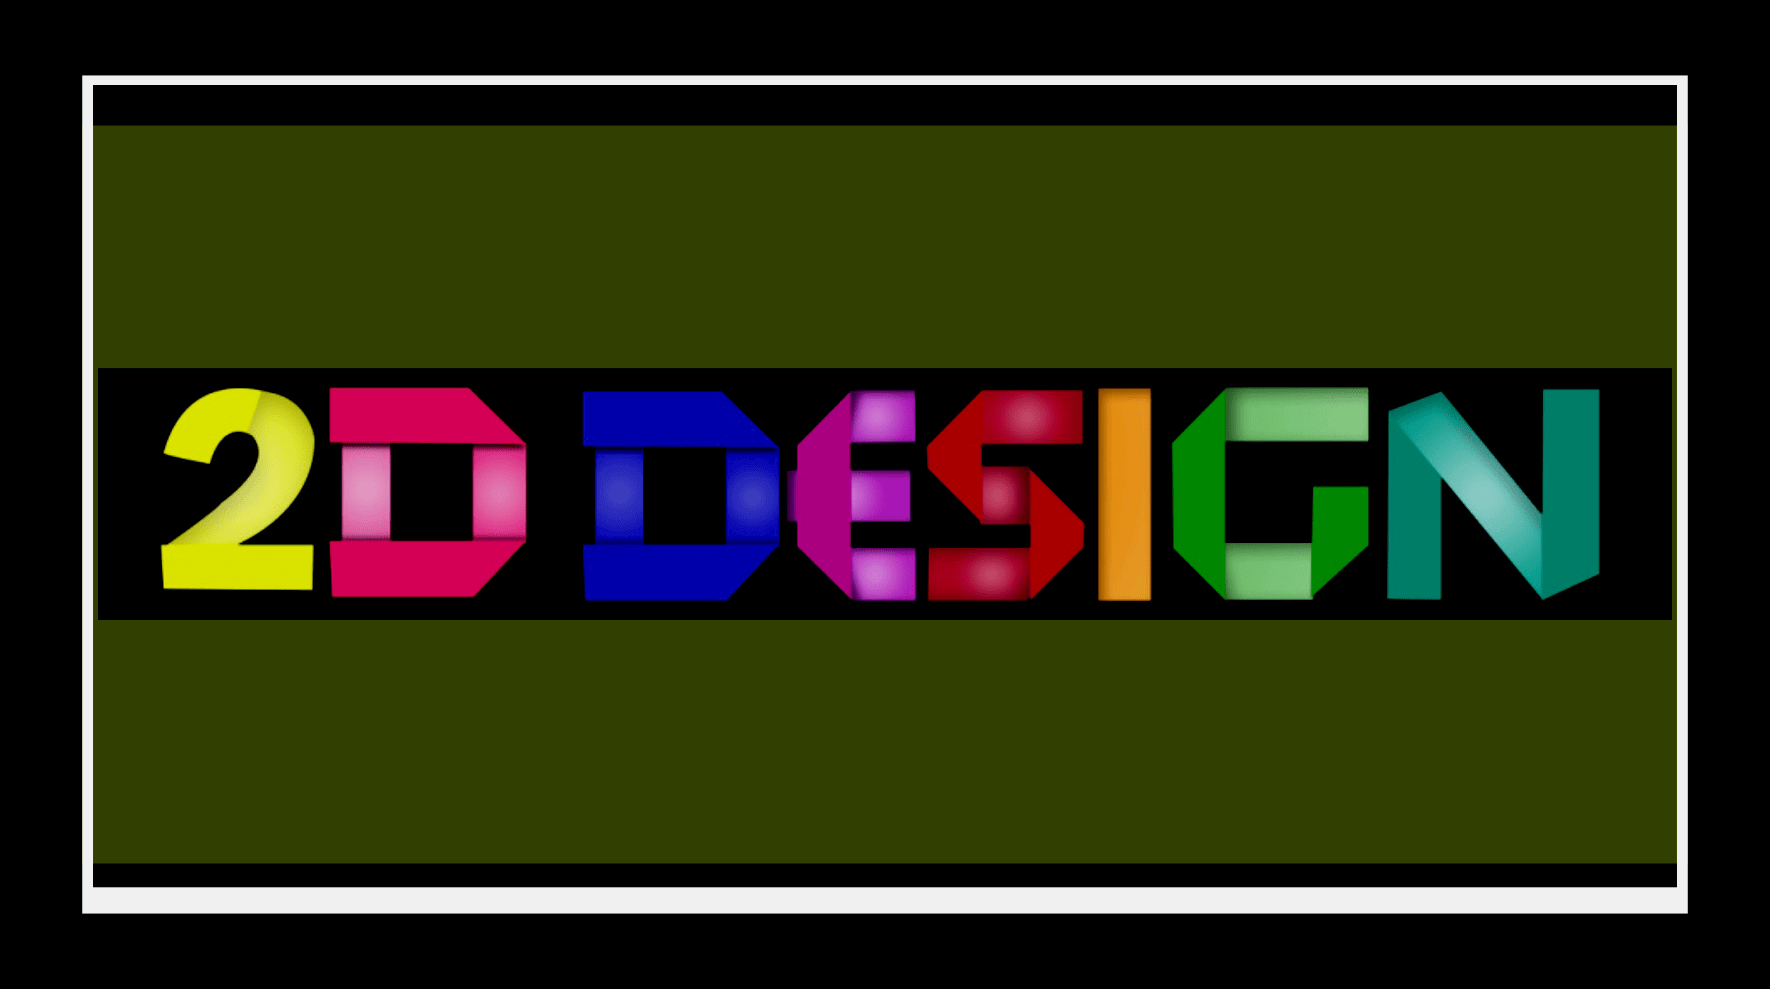 Thiết kế 2D: Bạn muốn khám phá cách thiết kế 2D tiên tiến và độc đáo của các nhà thiết kế chuyên nghiệp không? Hãy đến xem các sản phẩm thiết kế 2D đẹp và tinh tế nhất, cung cấp cho bạn sự kết hợp hoàn hảo giữa công nghệ và nghệ thuật. Đừng bỏ lỡ cơ hội để khám phá và học tập.